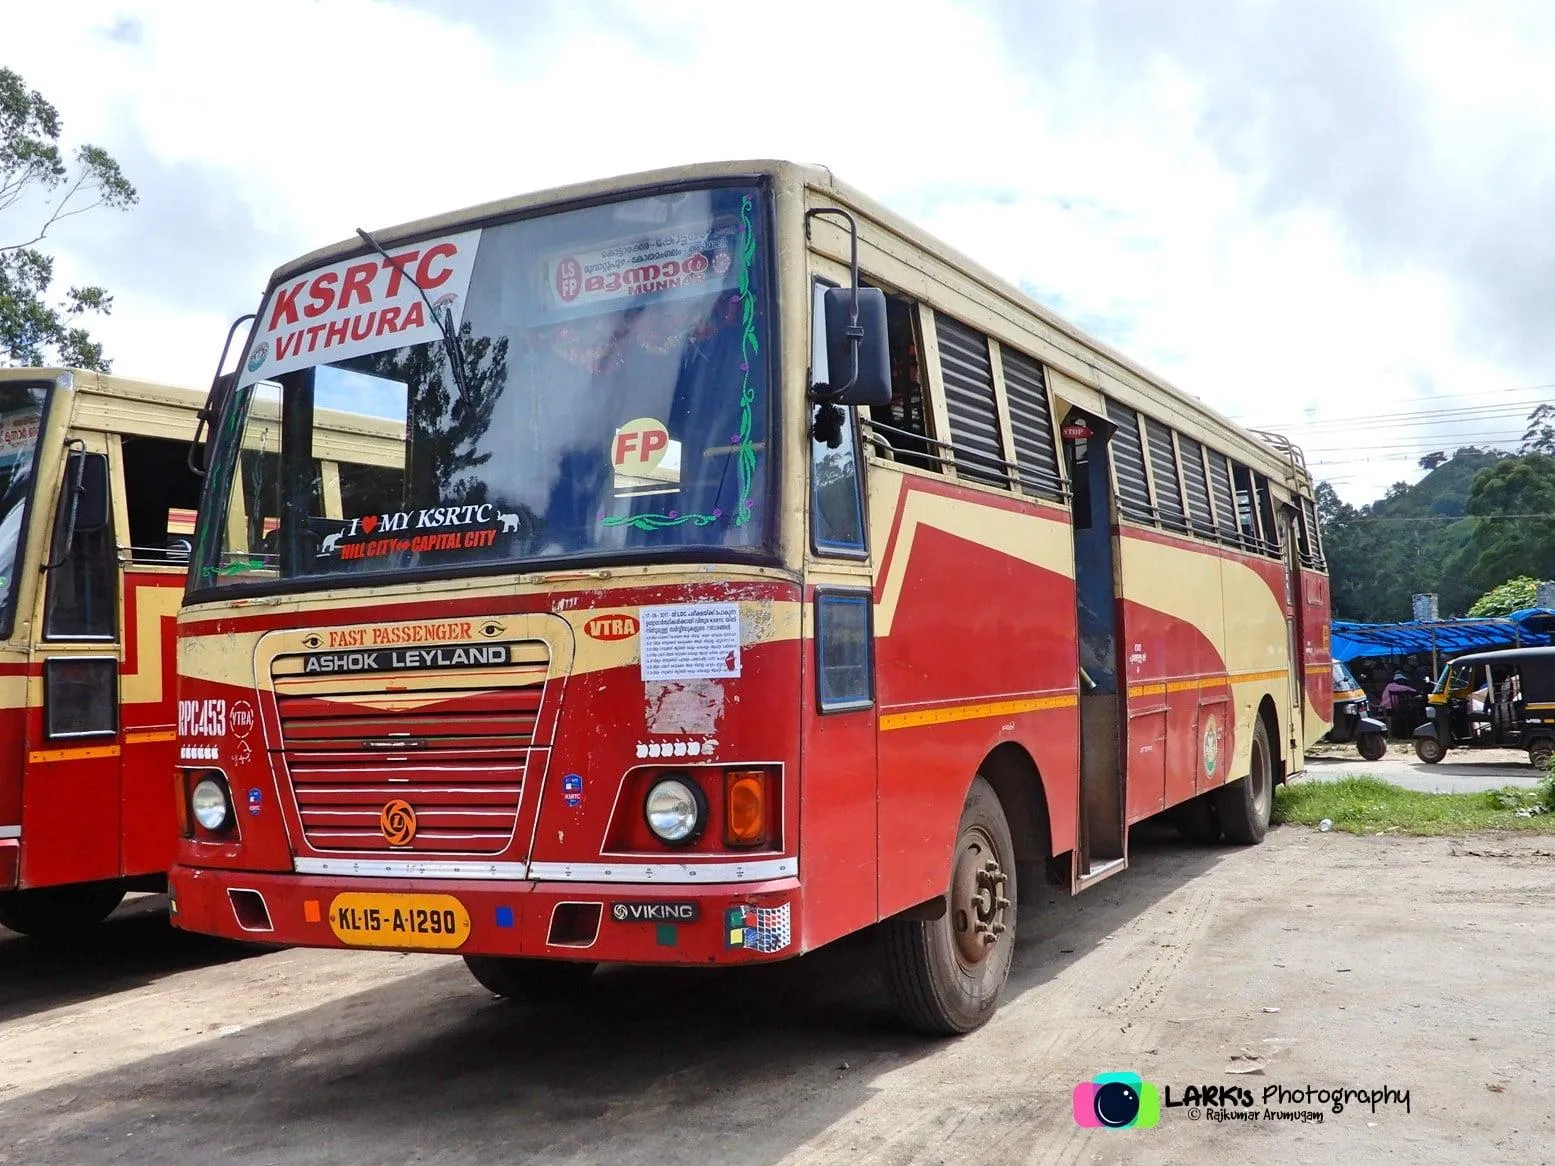 KSRTC RPC 453 Vithura - Chakkulathukavu Temple Fast Passenger Bus Timings